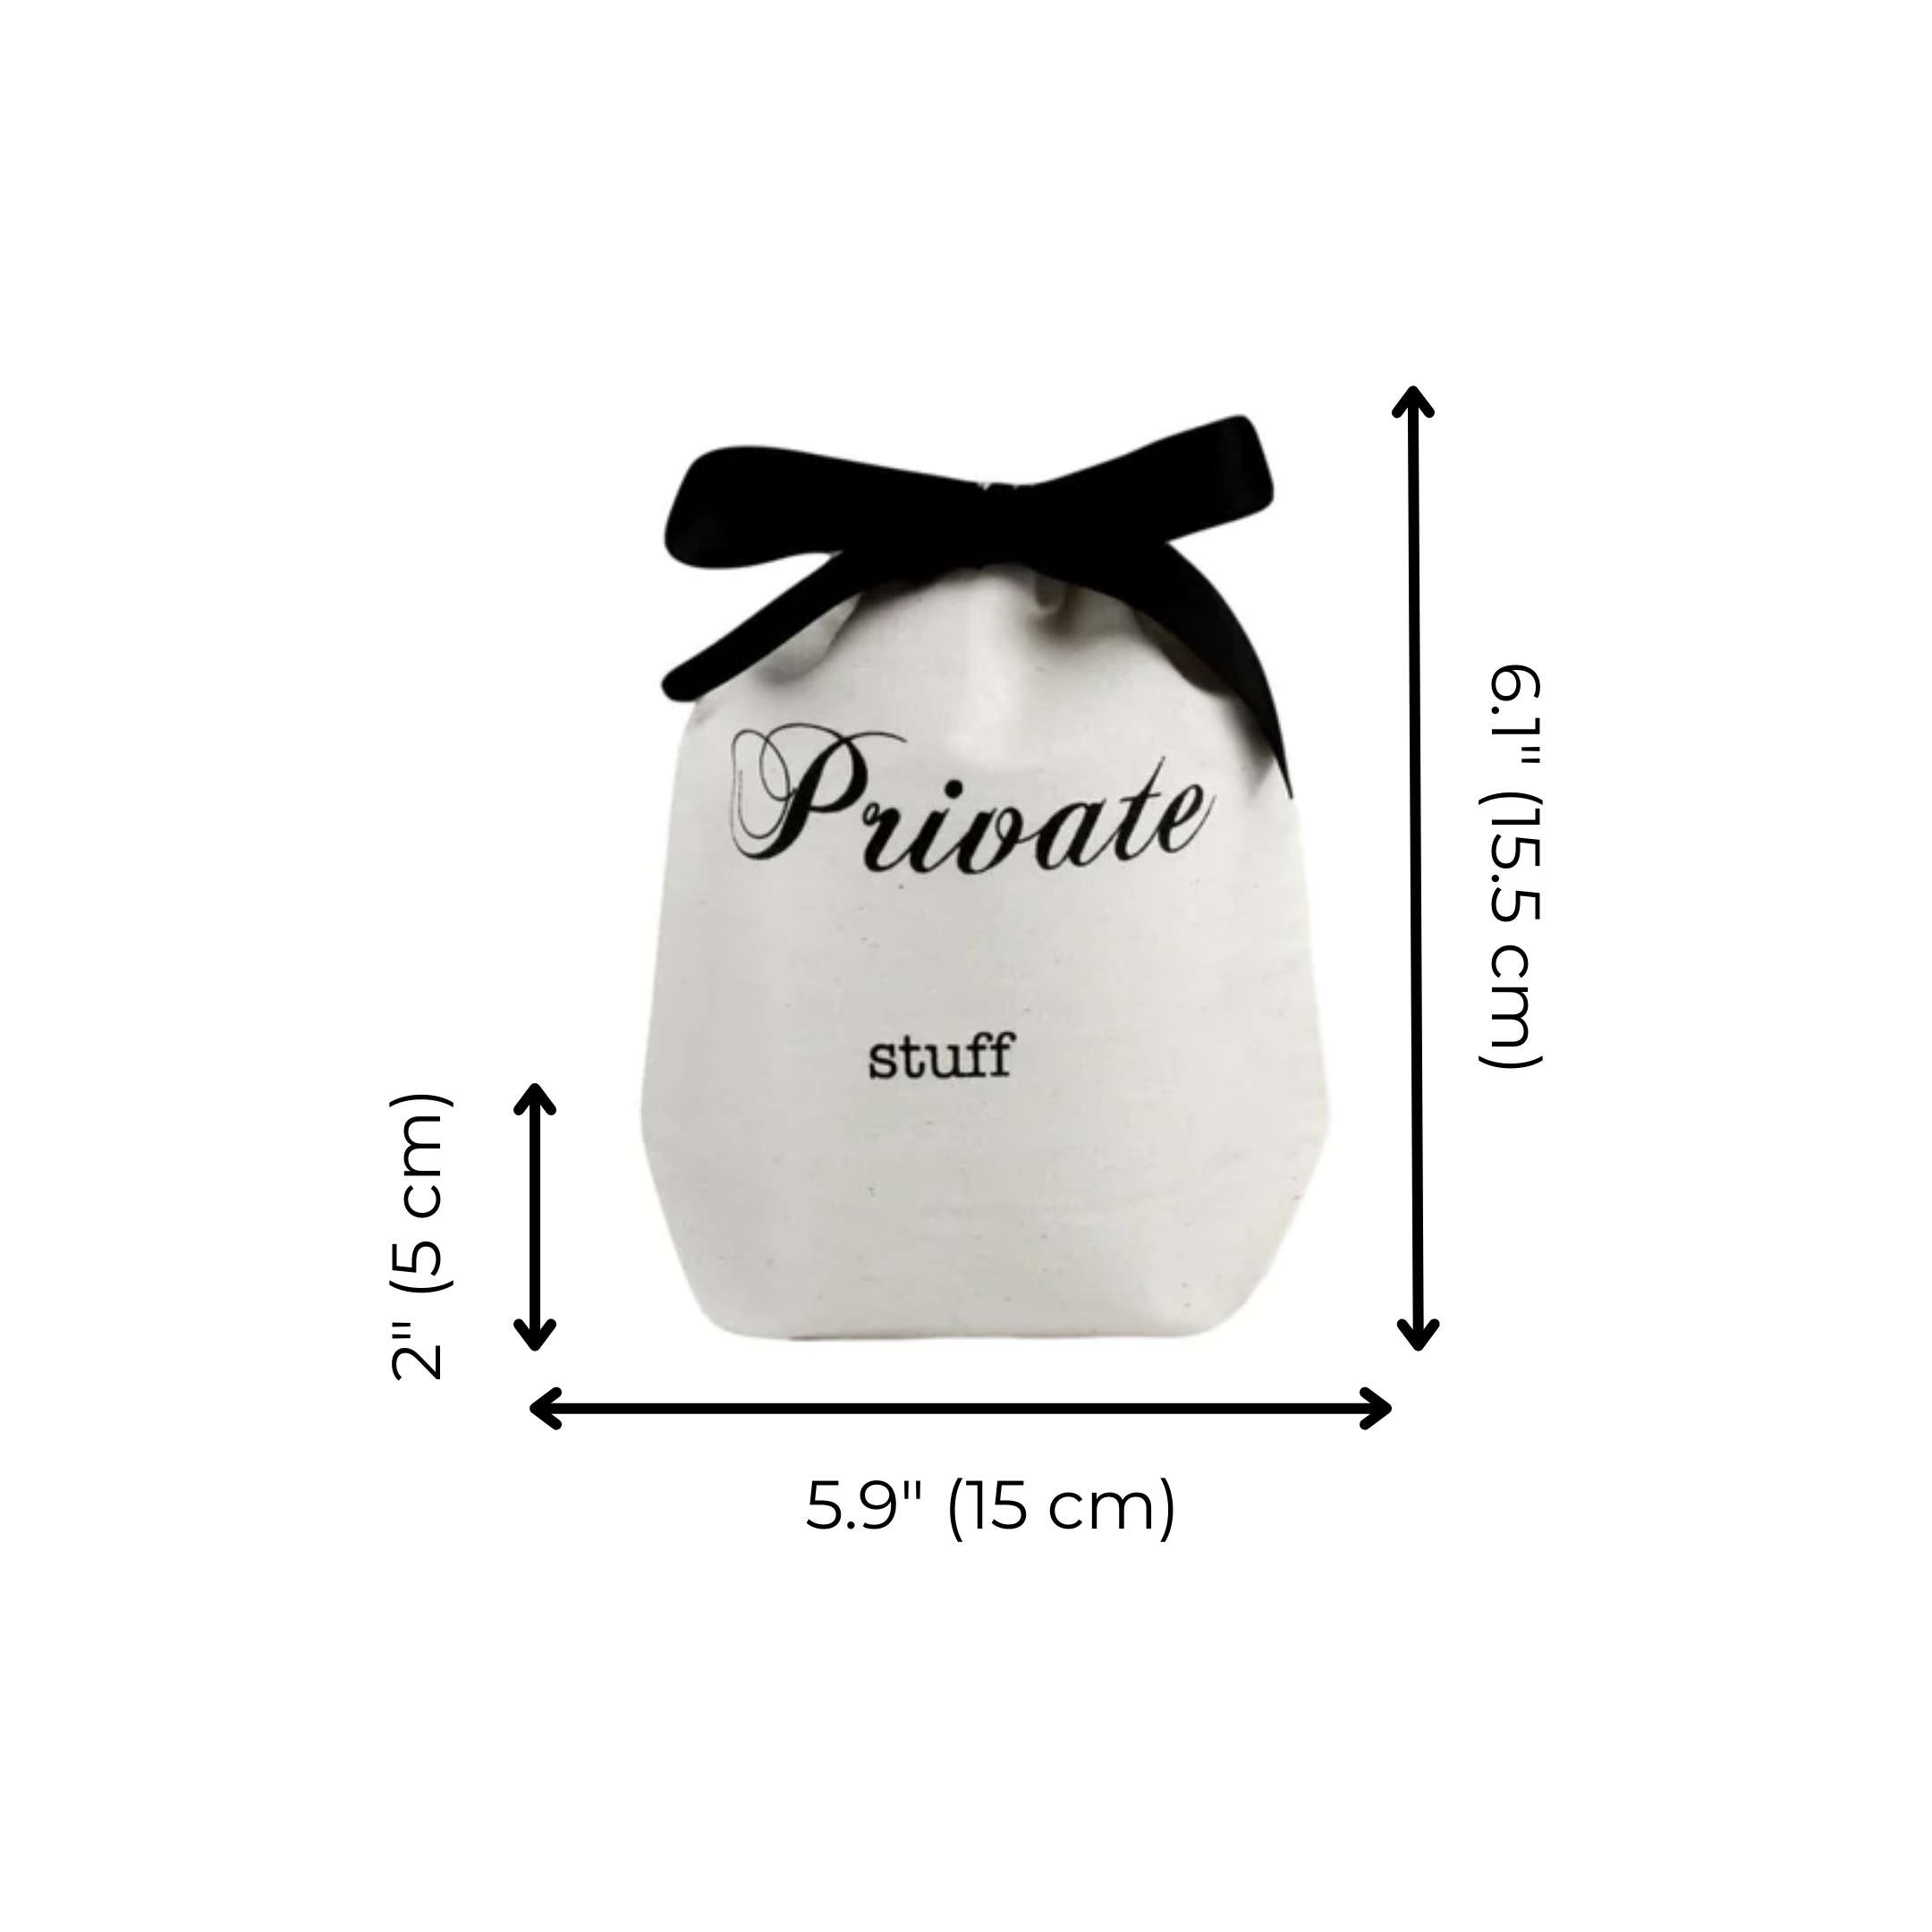 Private Stuff Small Bag, Cream | Bag-all